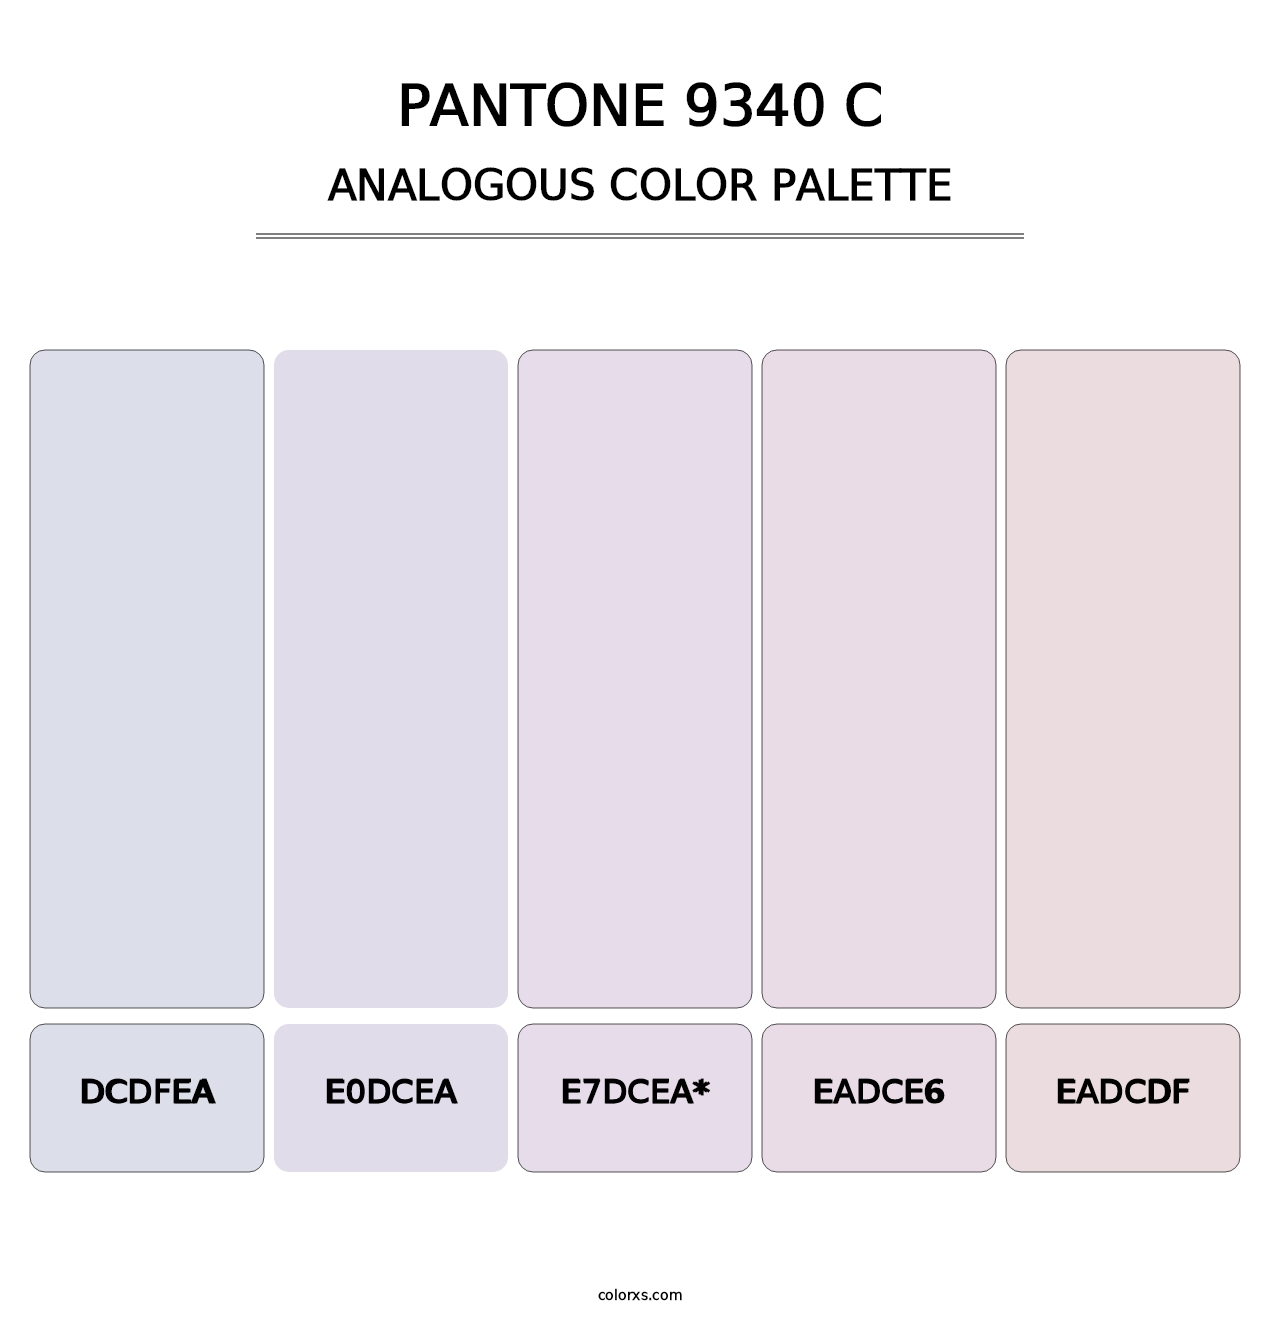 PANTONE 9340 C - Analogous Color Palette